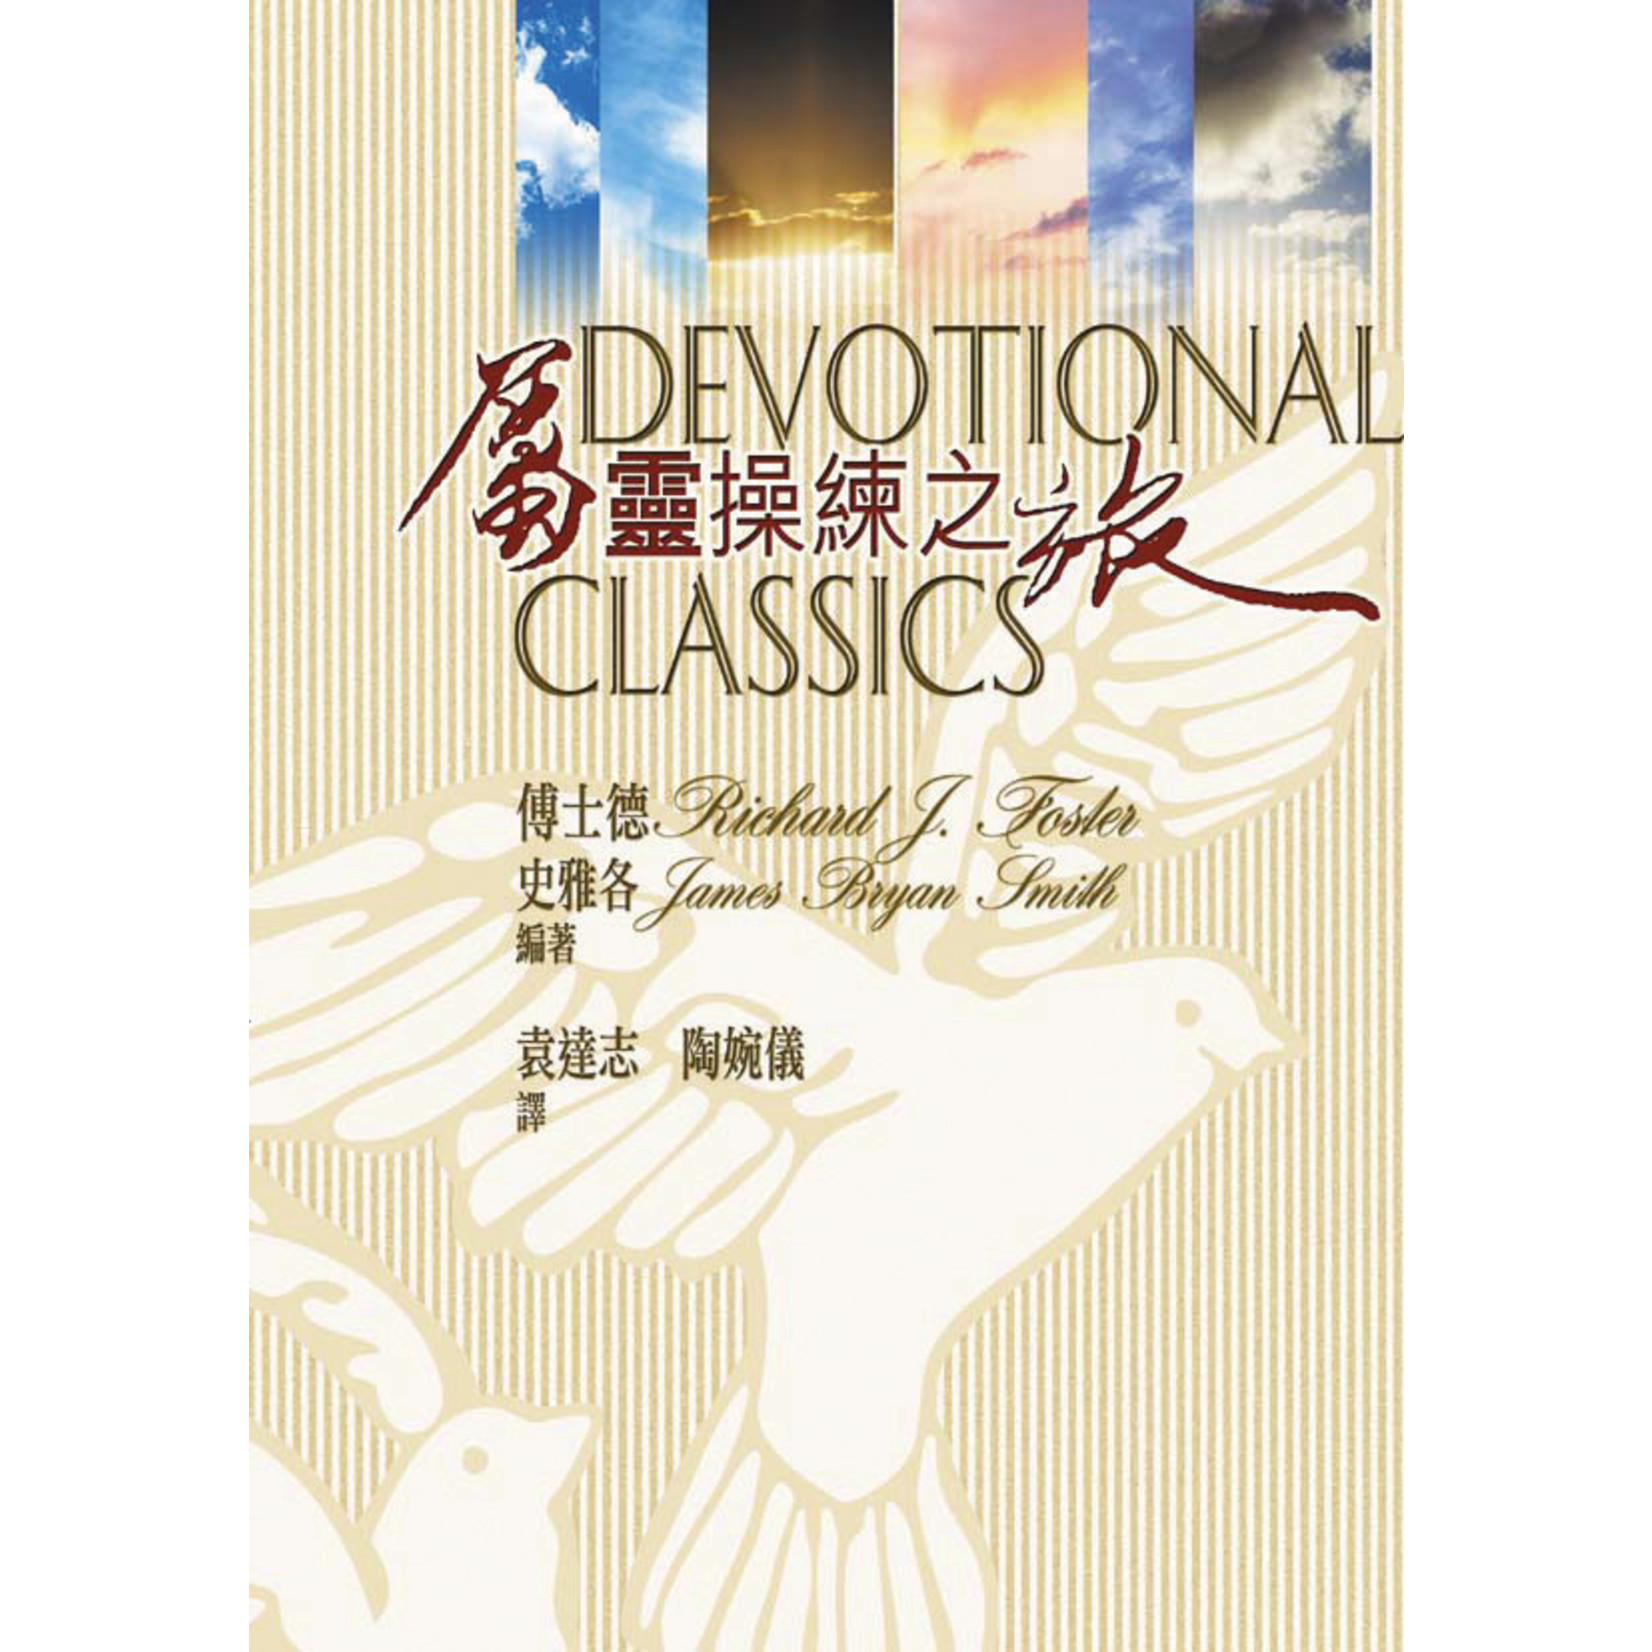 天道書樓 Tien Dao Publishing House 屬靈操練之旅 Devotional Classics: Selected Readings for Individuals and Groups